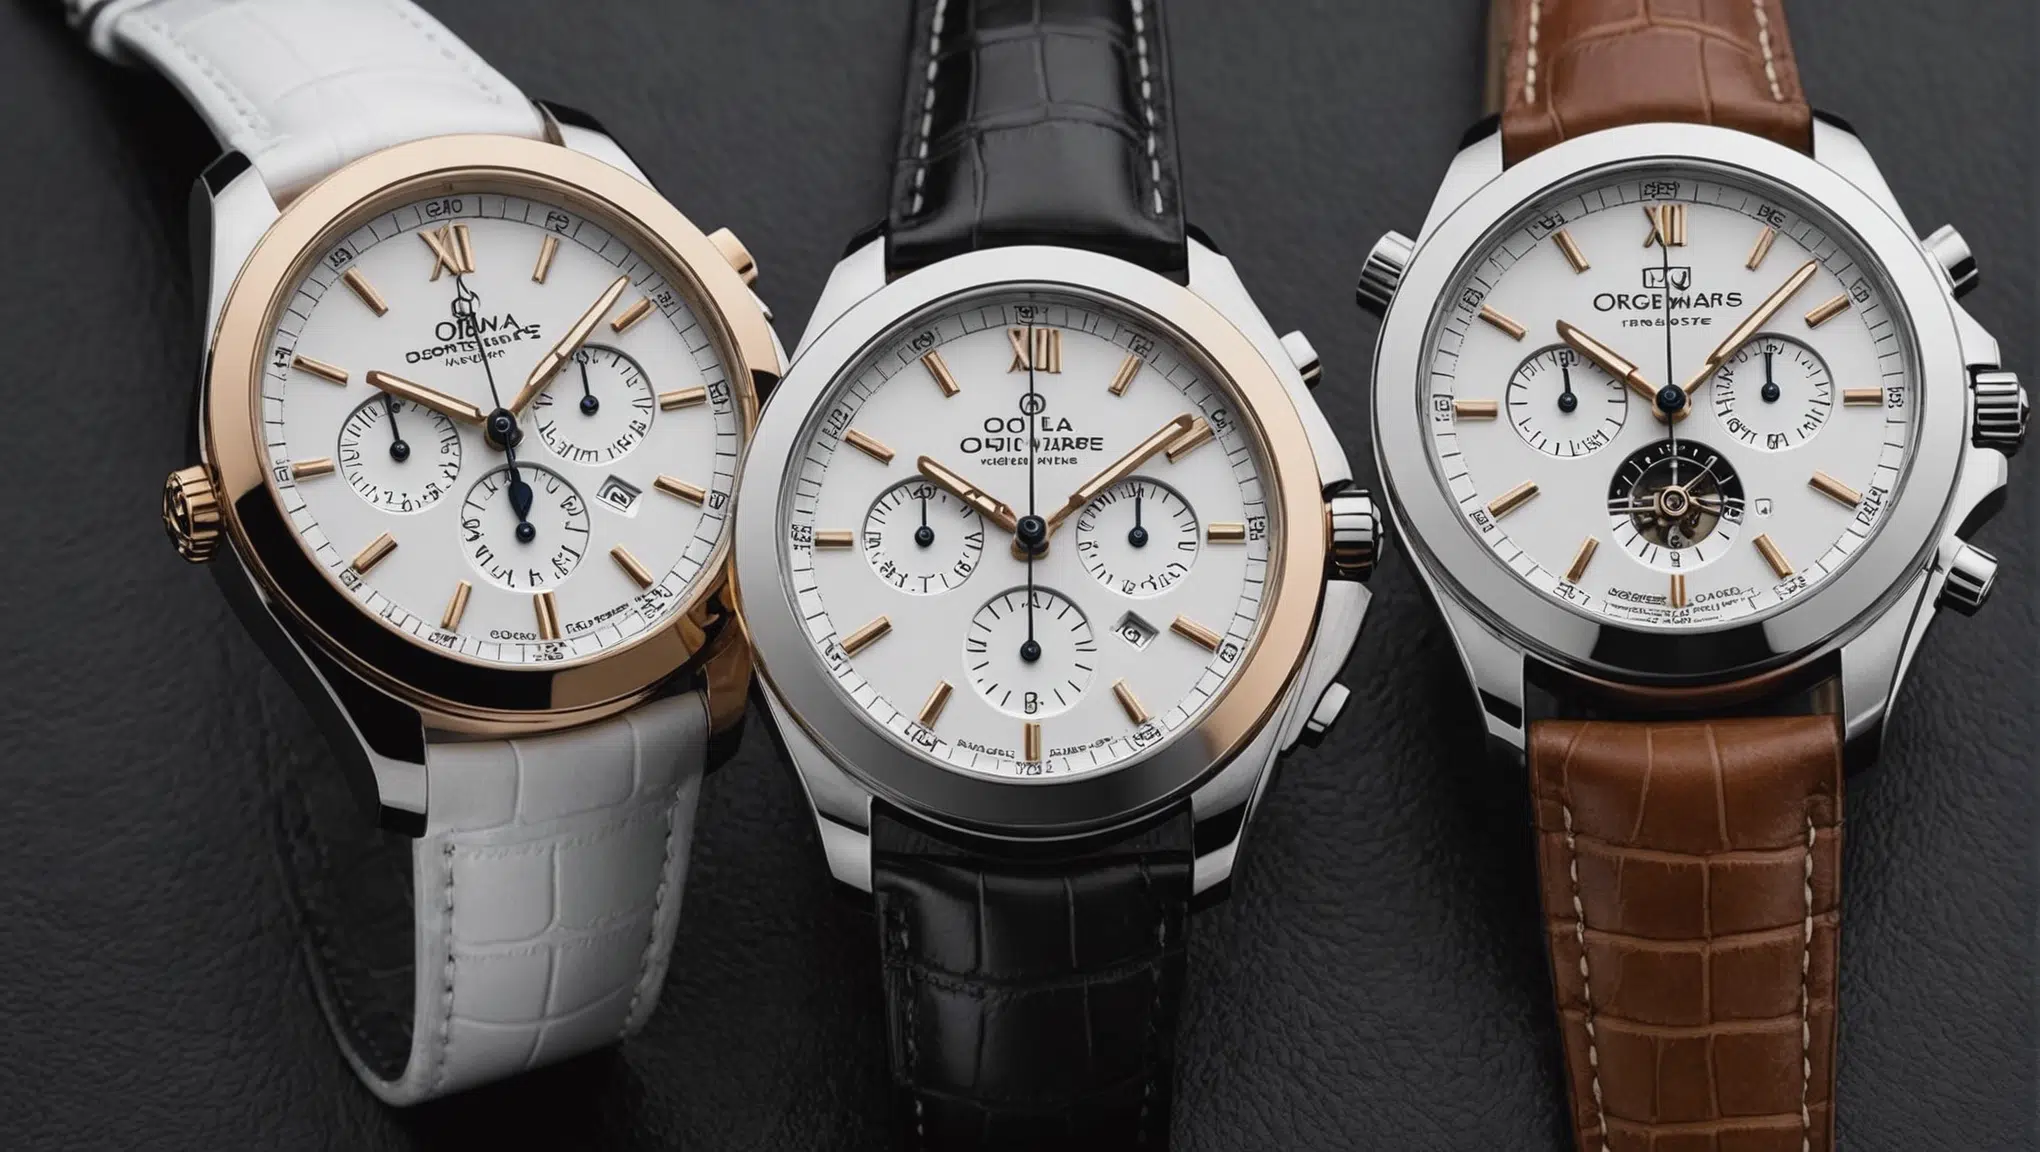 découvrez les 8 modèles incontournables de montres blanches pour homme : audemars piguet, swatch, rolex, omega, rado, et plus encore, pour trouver celle qui correspond le mieux à votre style.